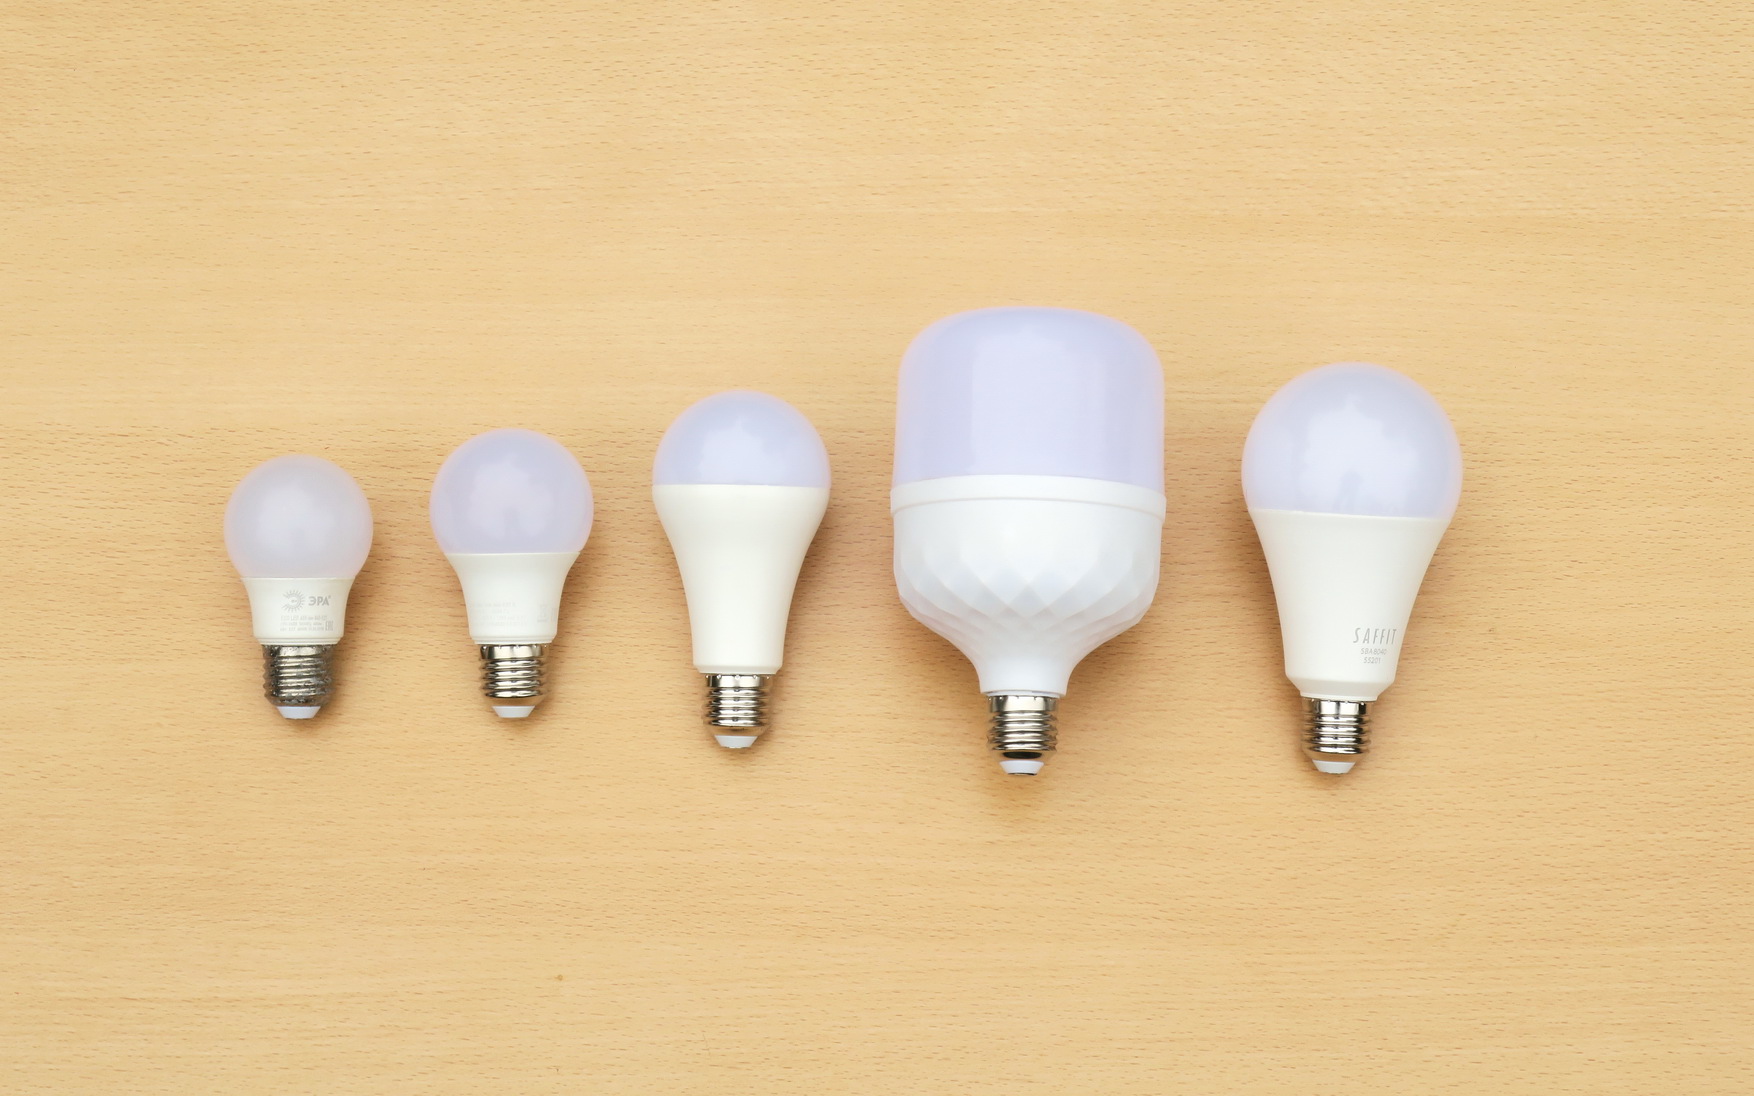 Ремонт энергосберегающих ламп своими руками: особенности, пошаговая инструкция и рекомендации